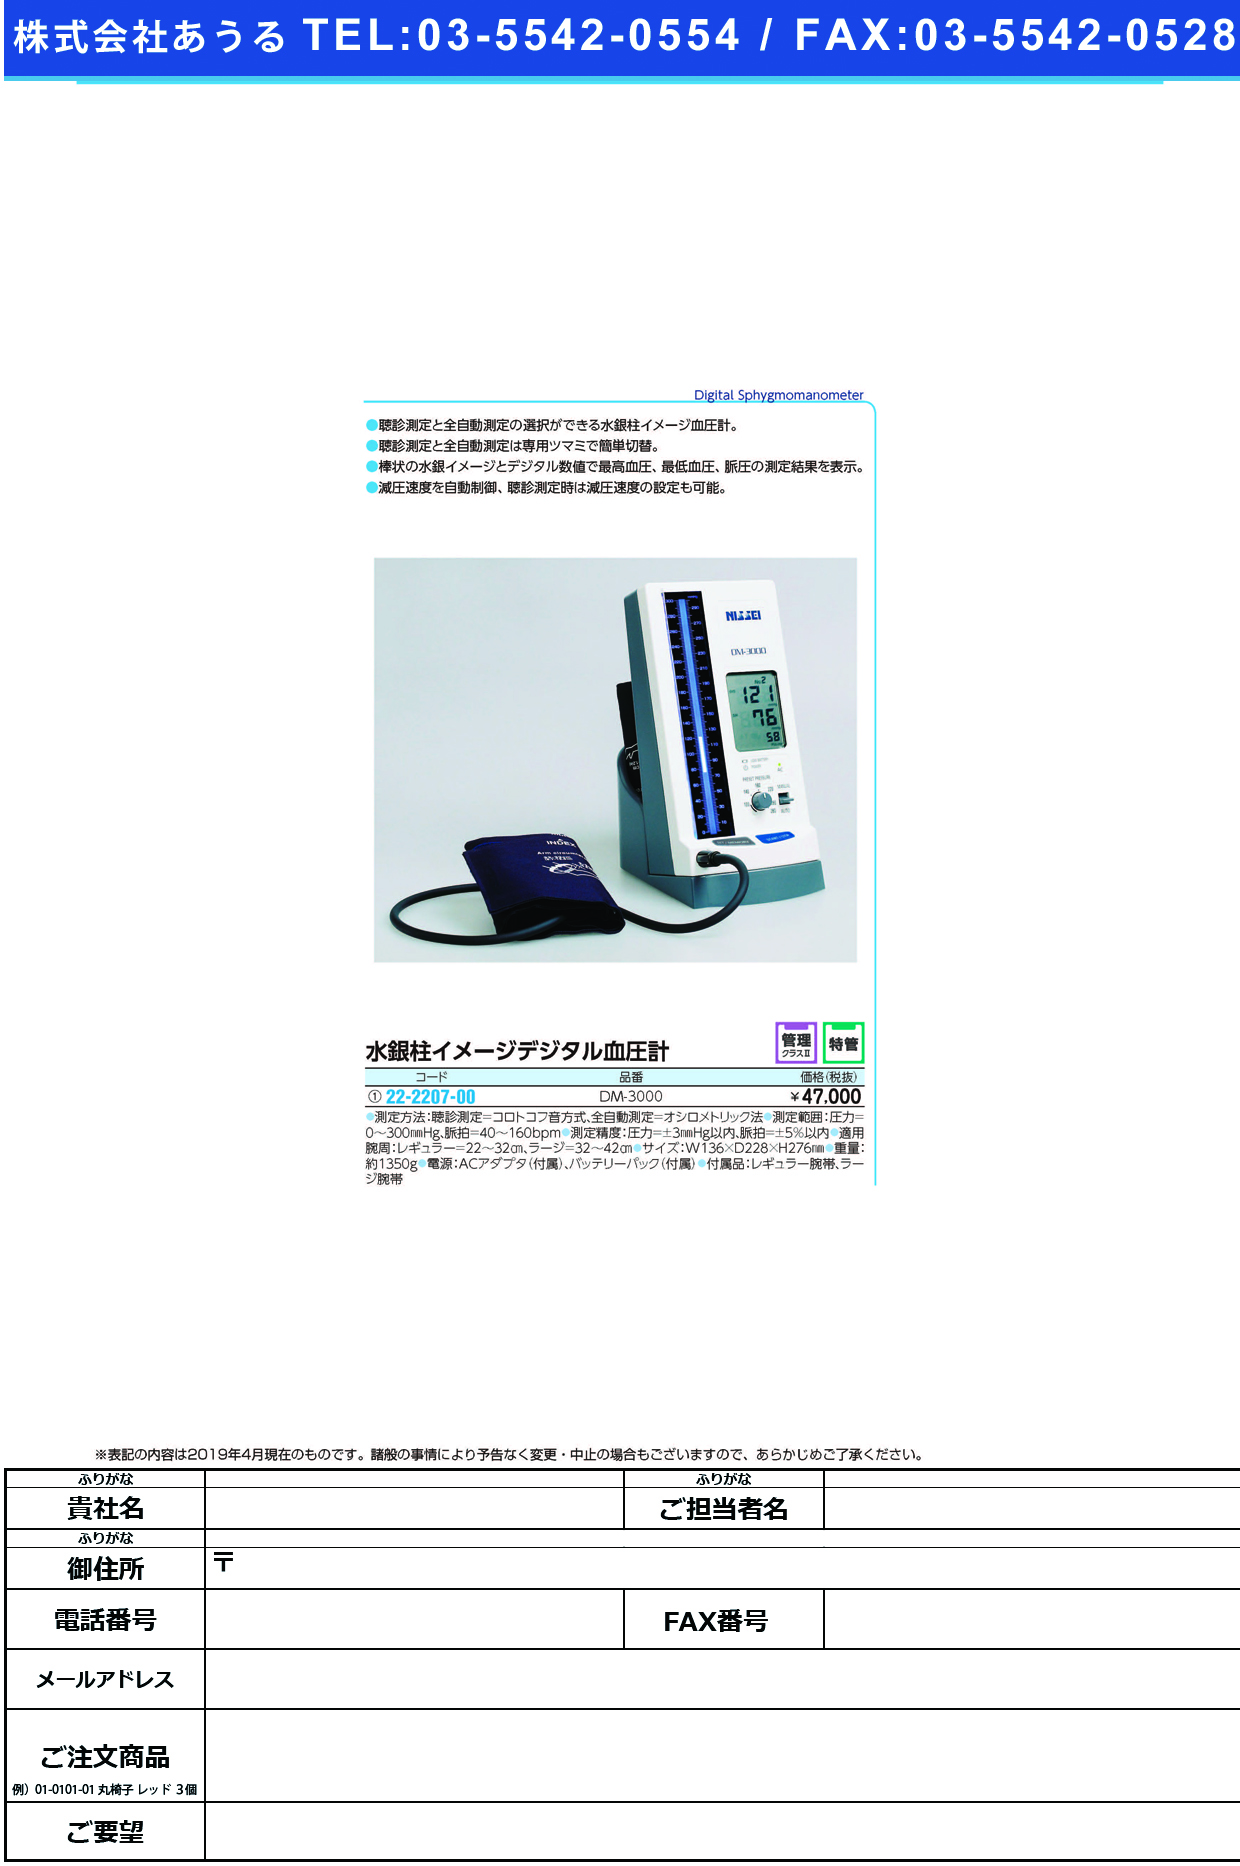 (22-2207-00)水銀柱イメージデジタル血圧計 DM-3000 ｽｲｷﾞﾝｲﾒｰｼﾞﾃﾞｼﾞﾀﾙｹﾂｱﾂ(日本精密測器)【1台単位】【2019年カタログ商品】